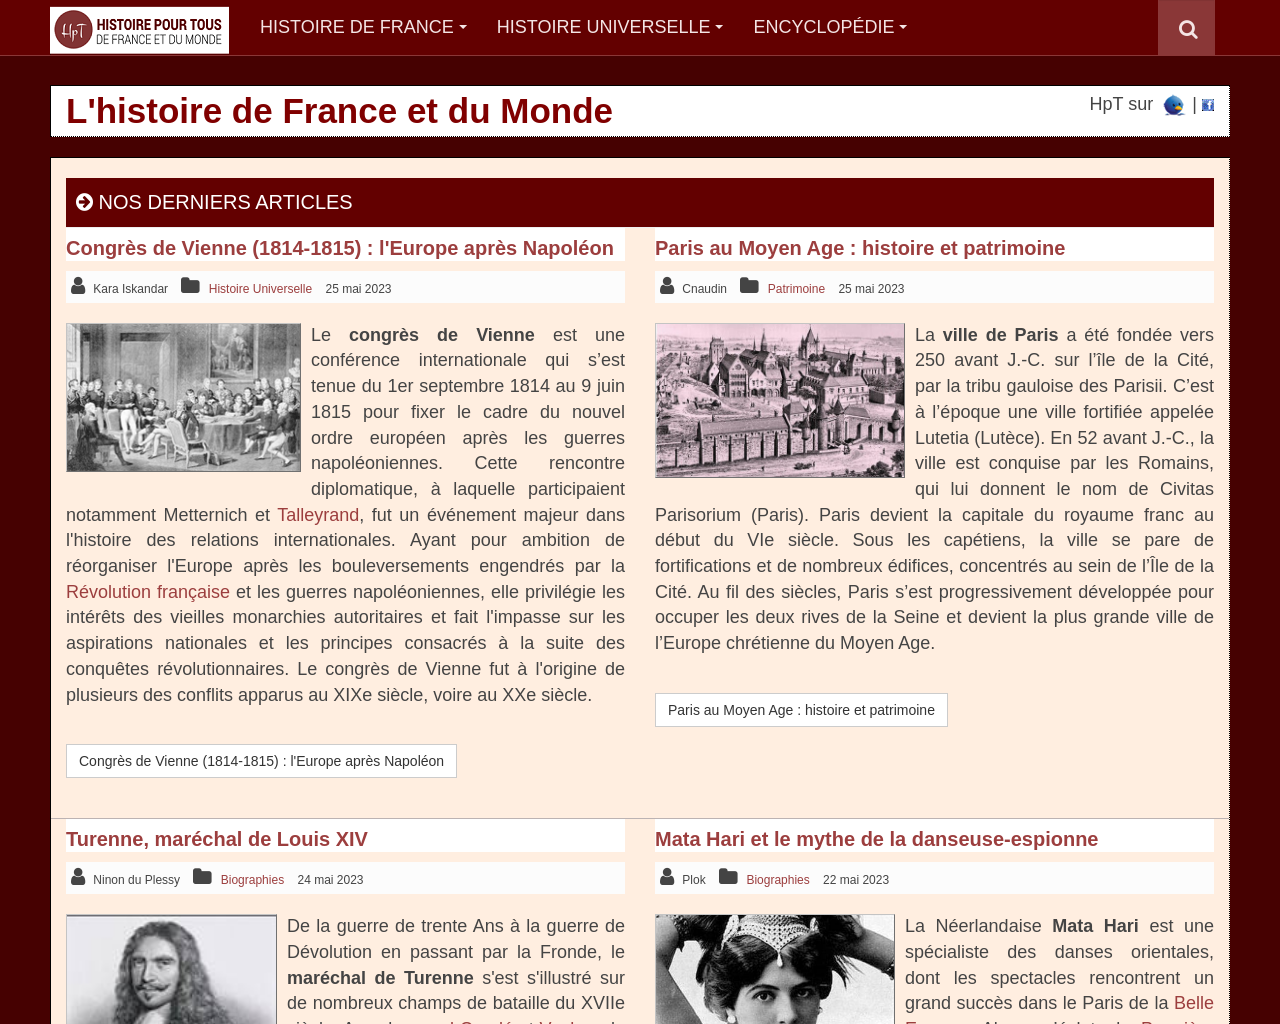 www.histoire-pour-tous.fr